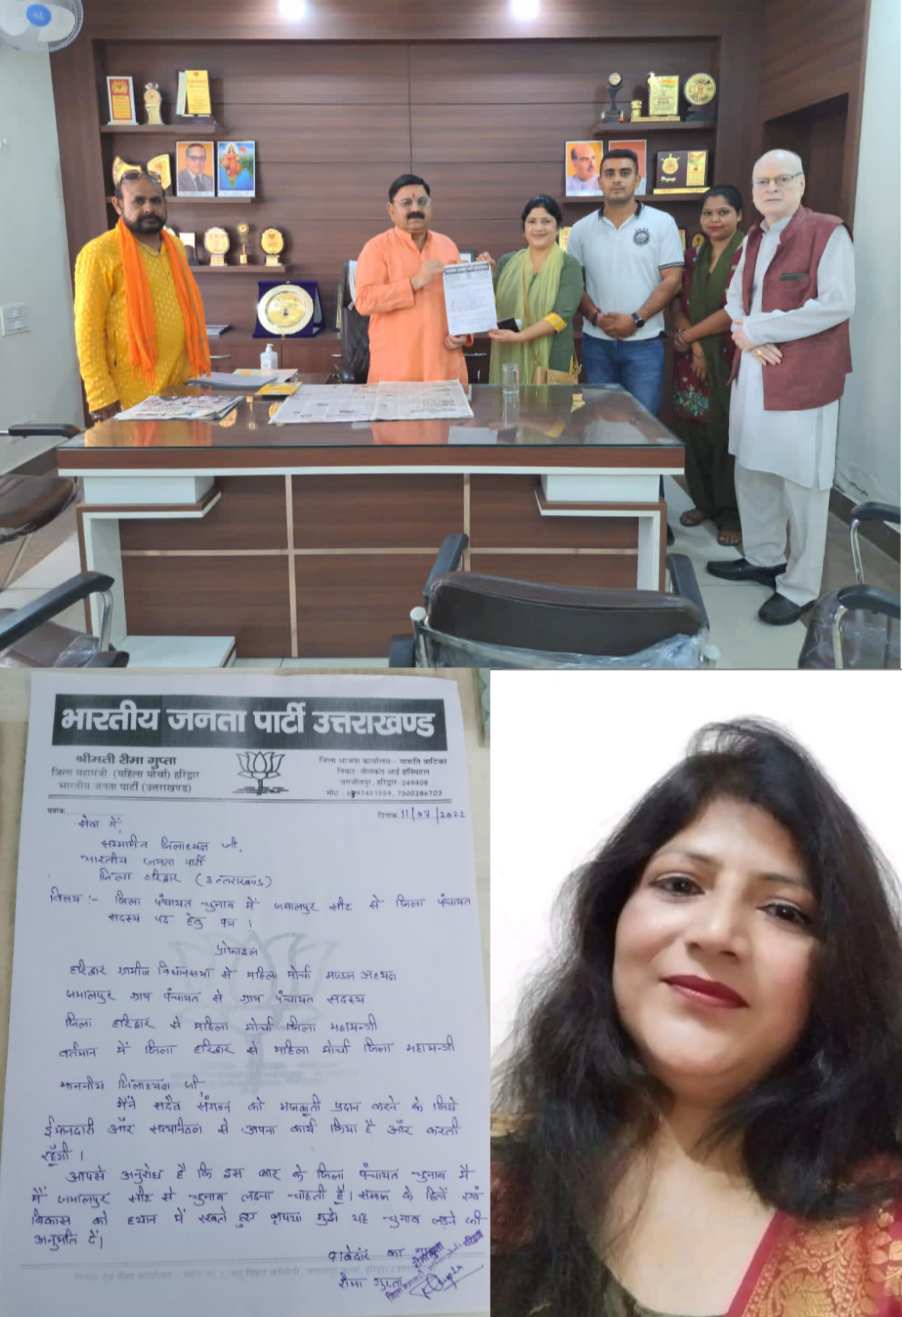 जिला महामंत्री महिला मोर्चा के द्वारा जमालपुर जिला पंचायत सीट से चुनाव लड़ने को लेकर भाजपा जिलाध्यक्ष को सौंपा गया पत्र